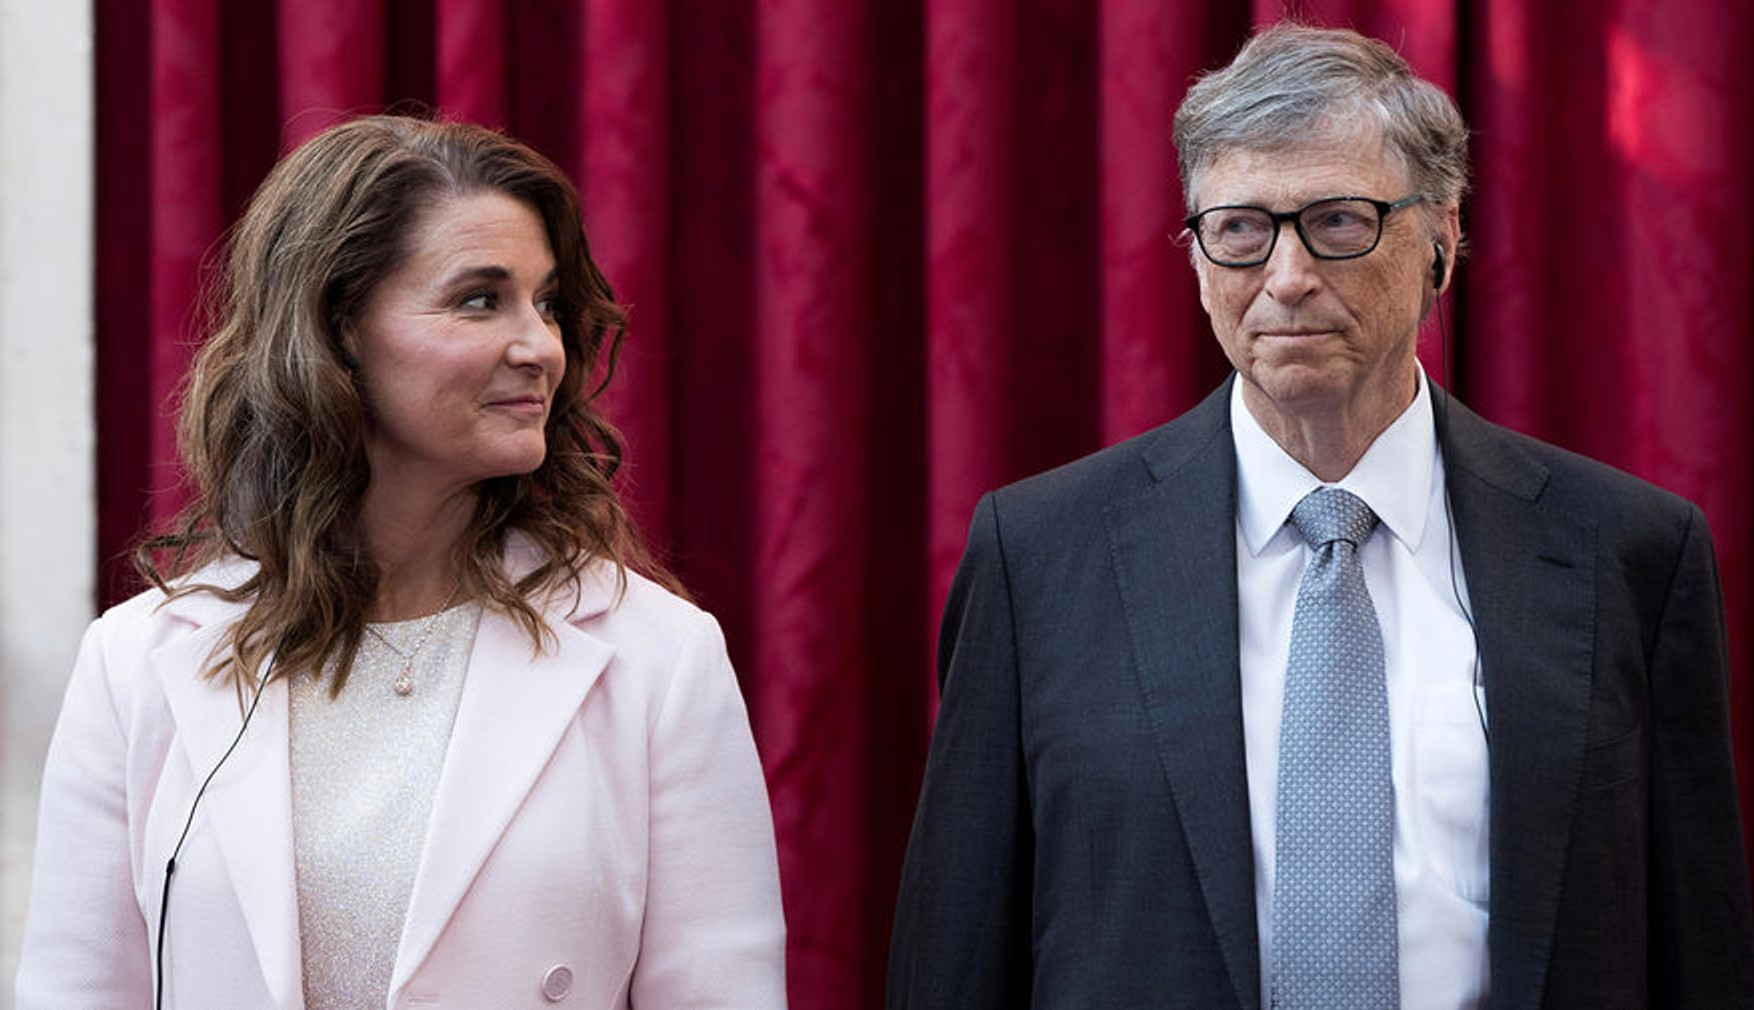 Білл і Мелінда Гейтс офіційно розлучилися після 27 років шлюбу